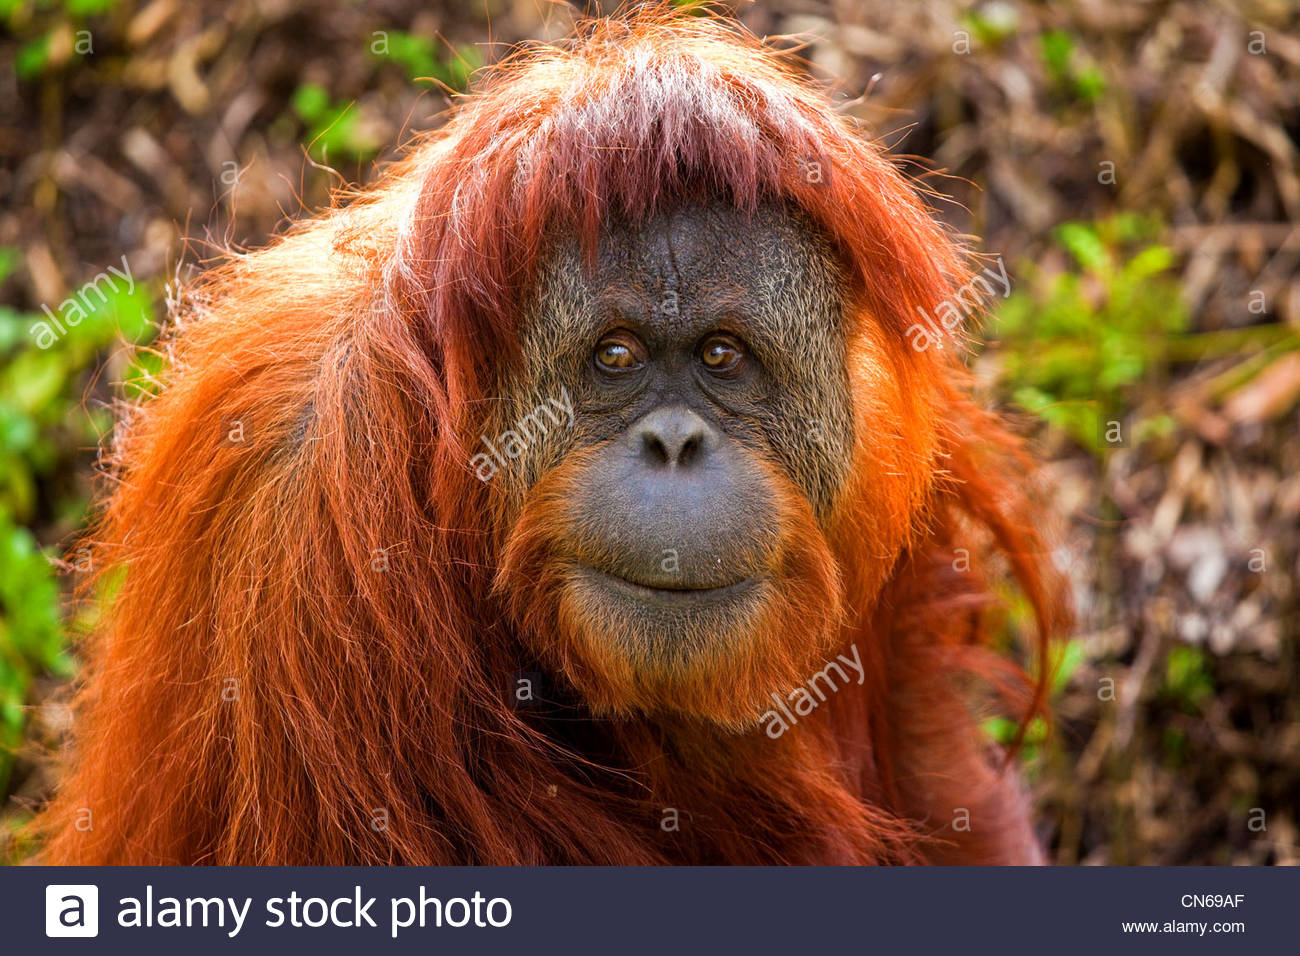 orangutan-CN69AF.jpg